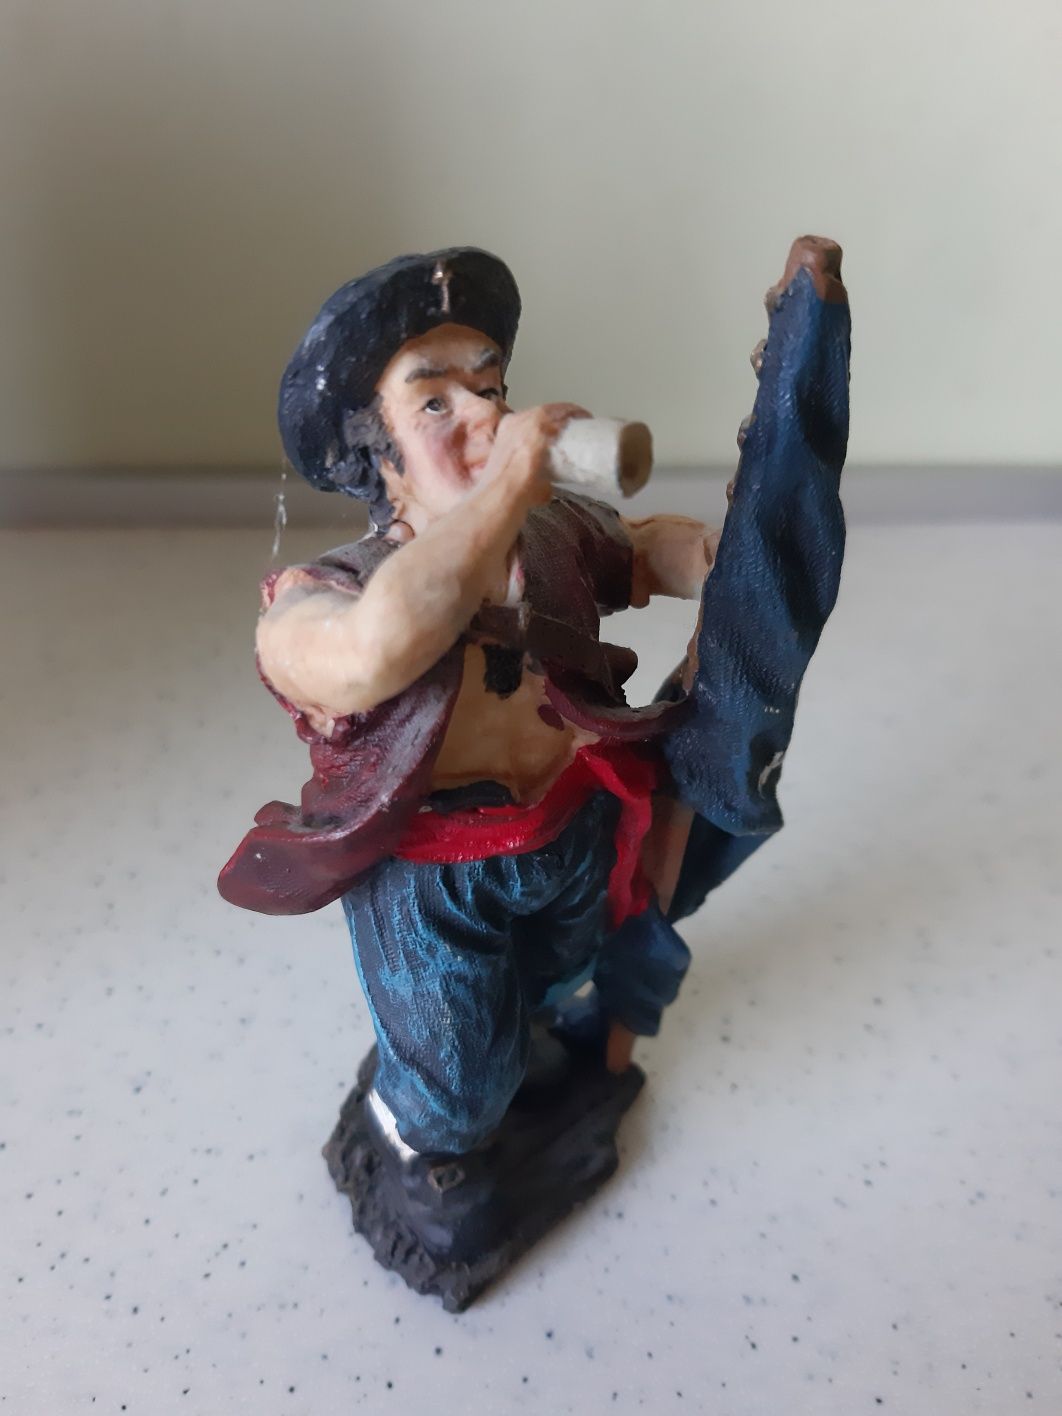 Pirat tworzywo figurka manekin vintage boho stara strych kolekcja prl